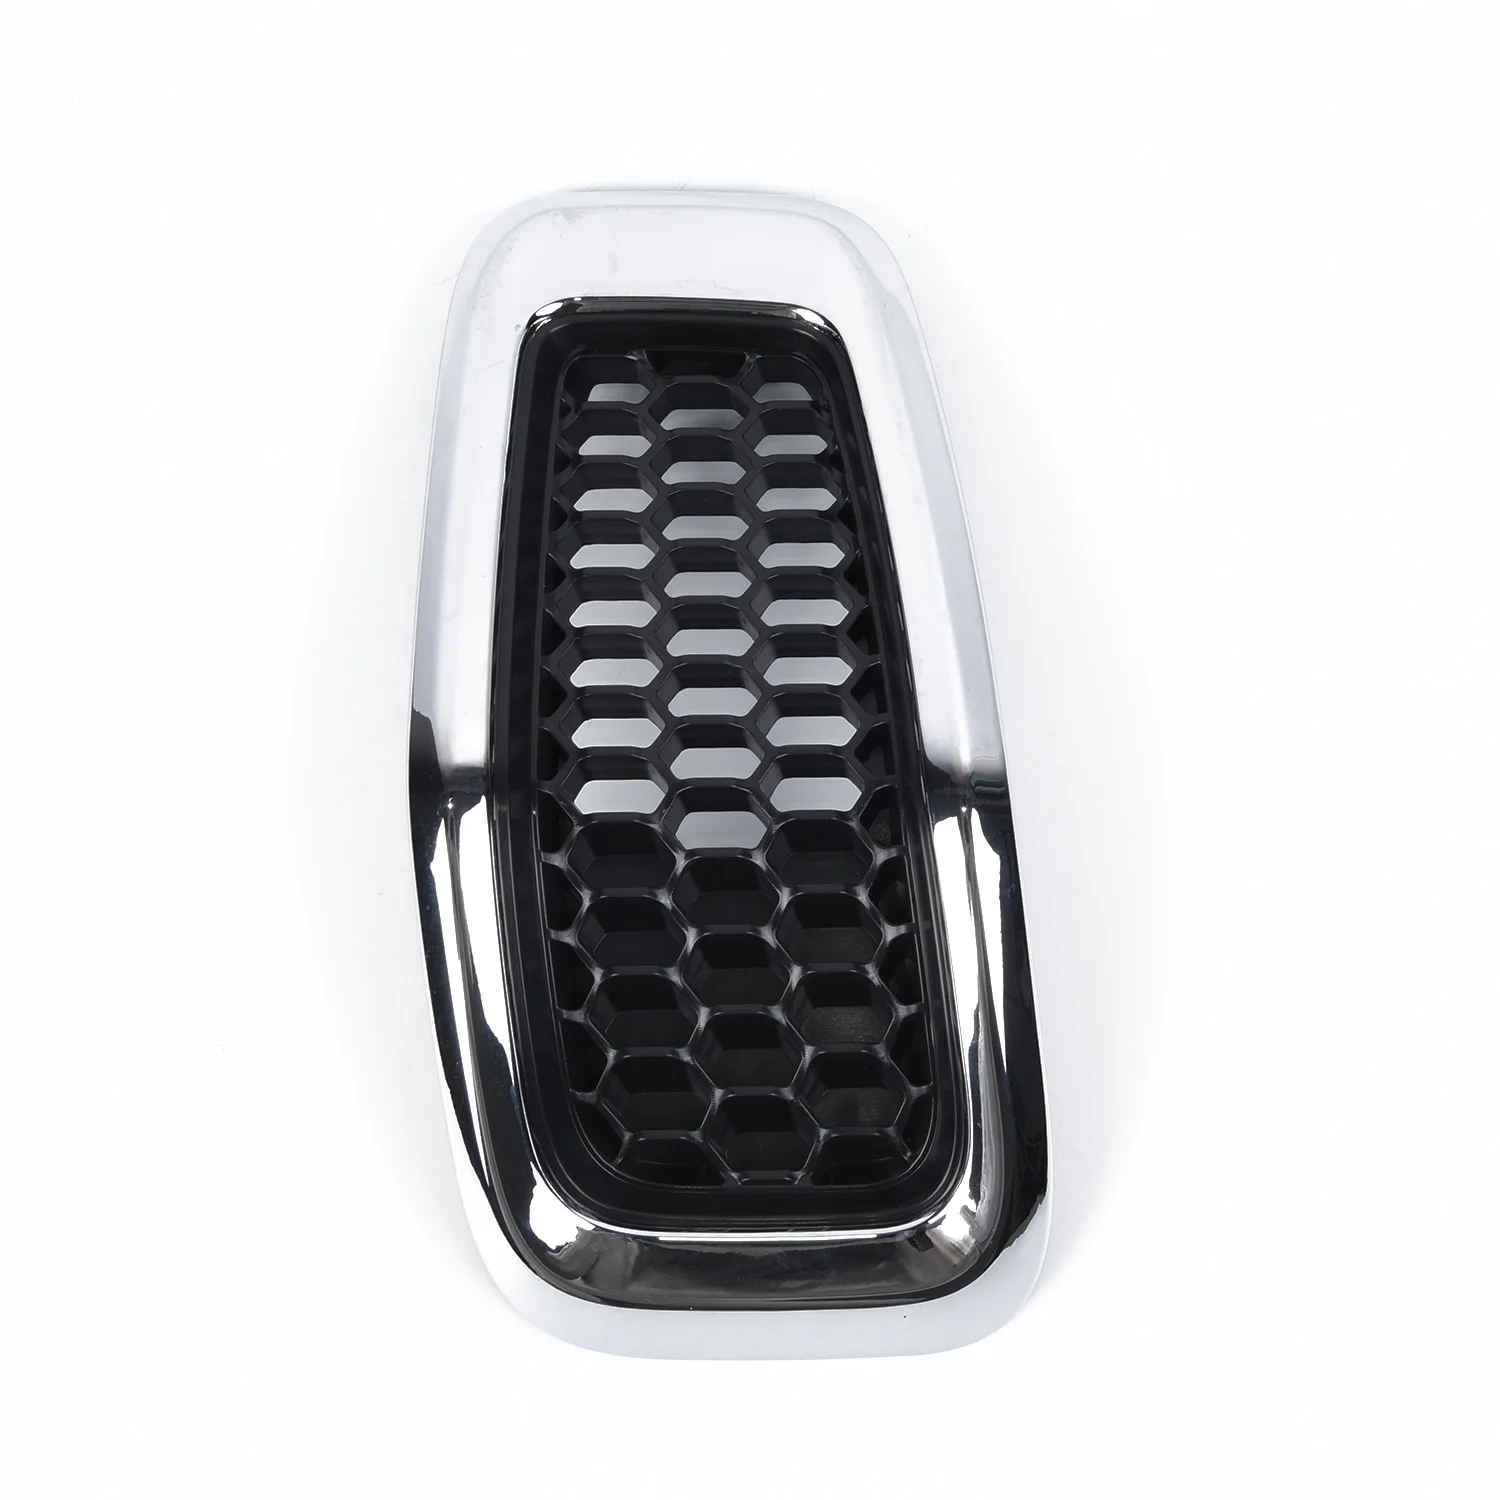 7 шт. передняя решетка черные вставки глянцевый пластик подходит для замены- Jeep Cherokee рамка аксессуары